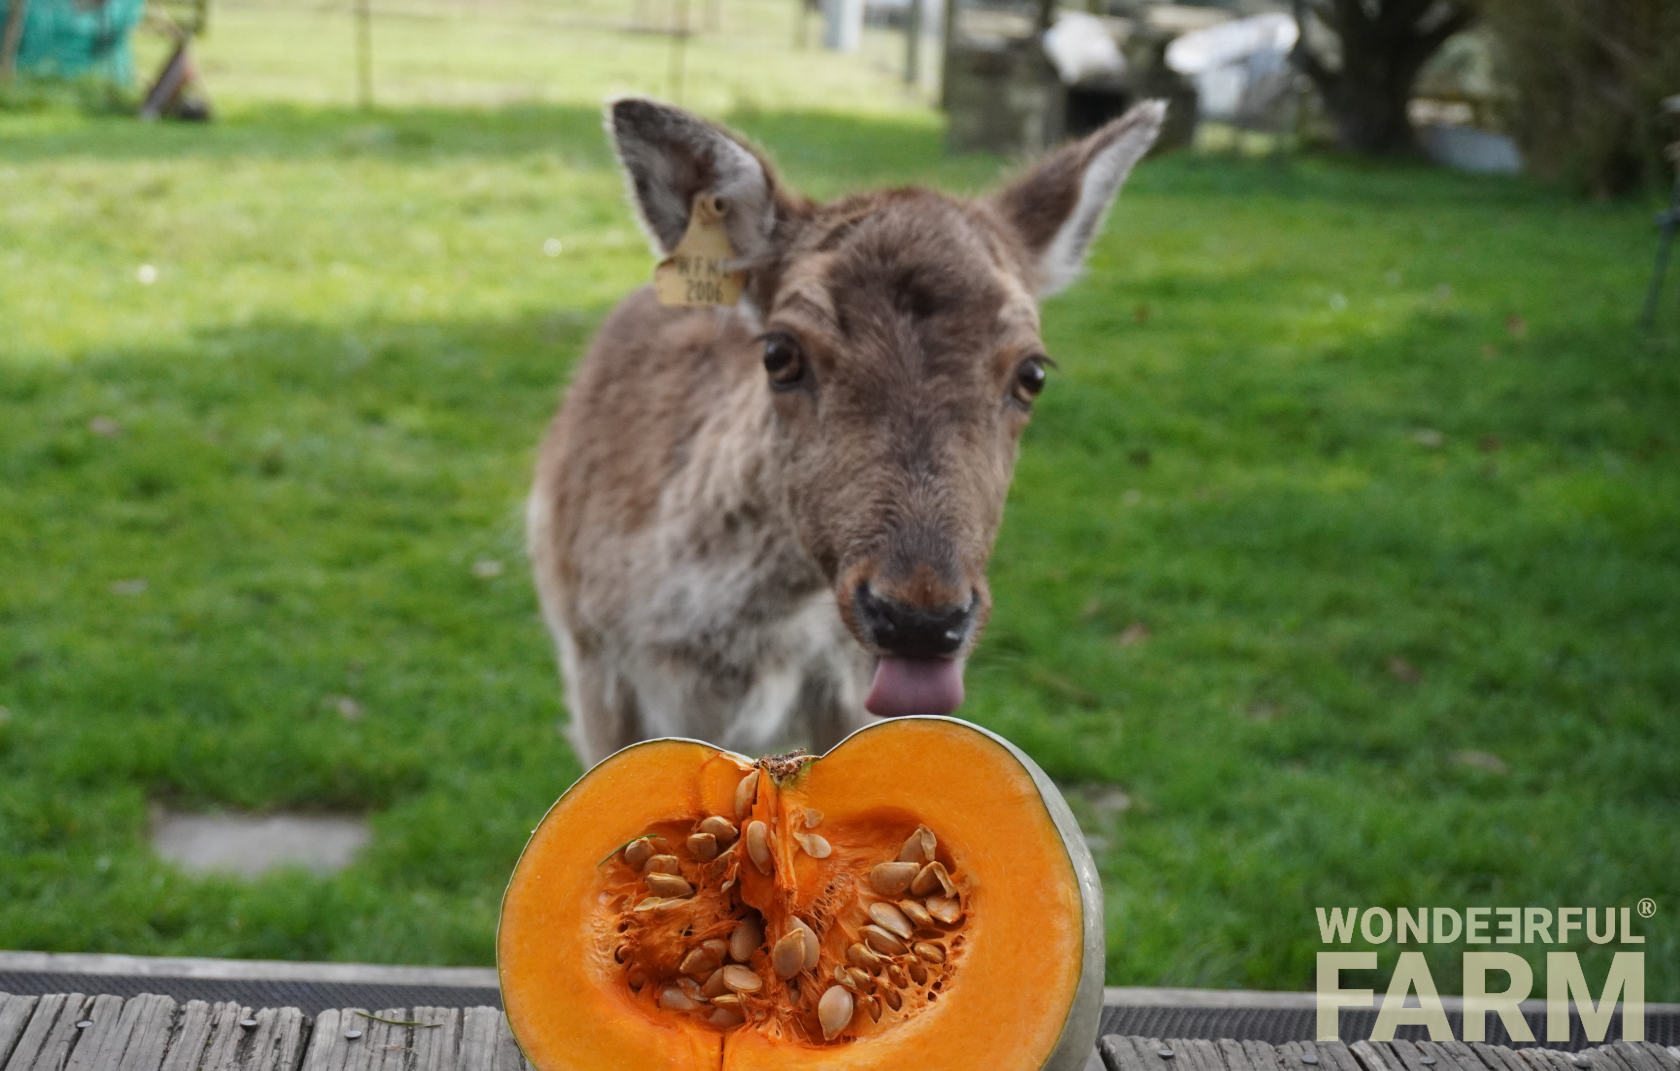 deer reaching out to lick pumpkin